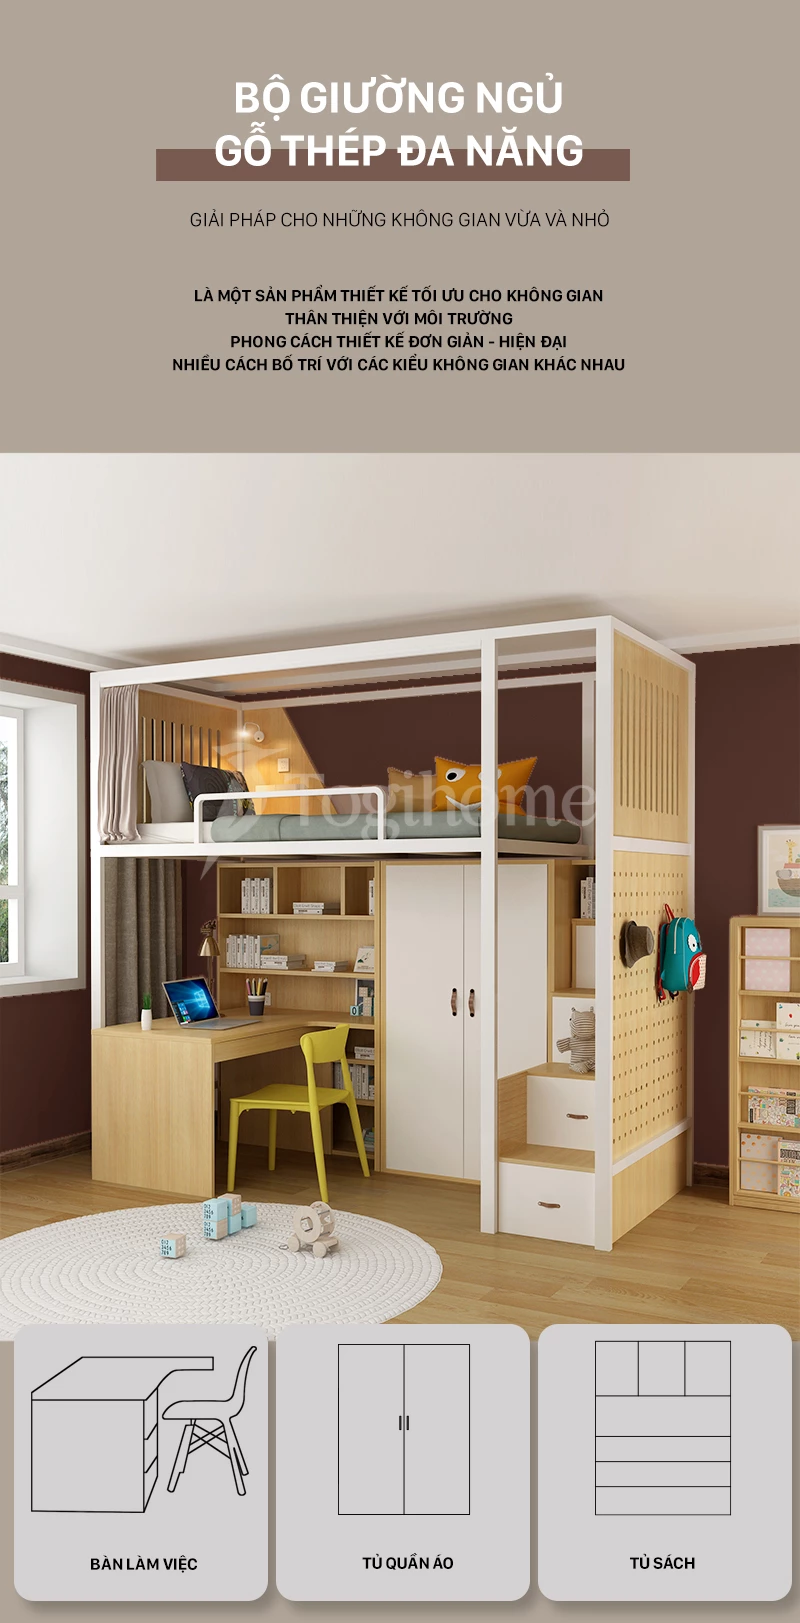 Bộ giường ngủ cao cấp GSTE004 kết hợp tủ quần áo/Bàn học/Tủ thang đa năng, phong cách hiện đại tối ưu không gian